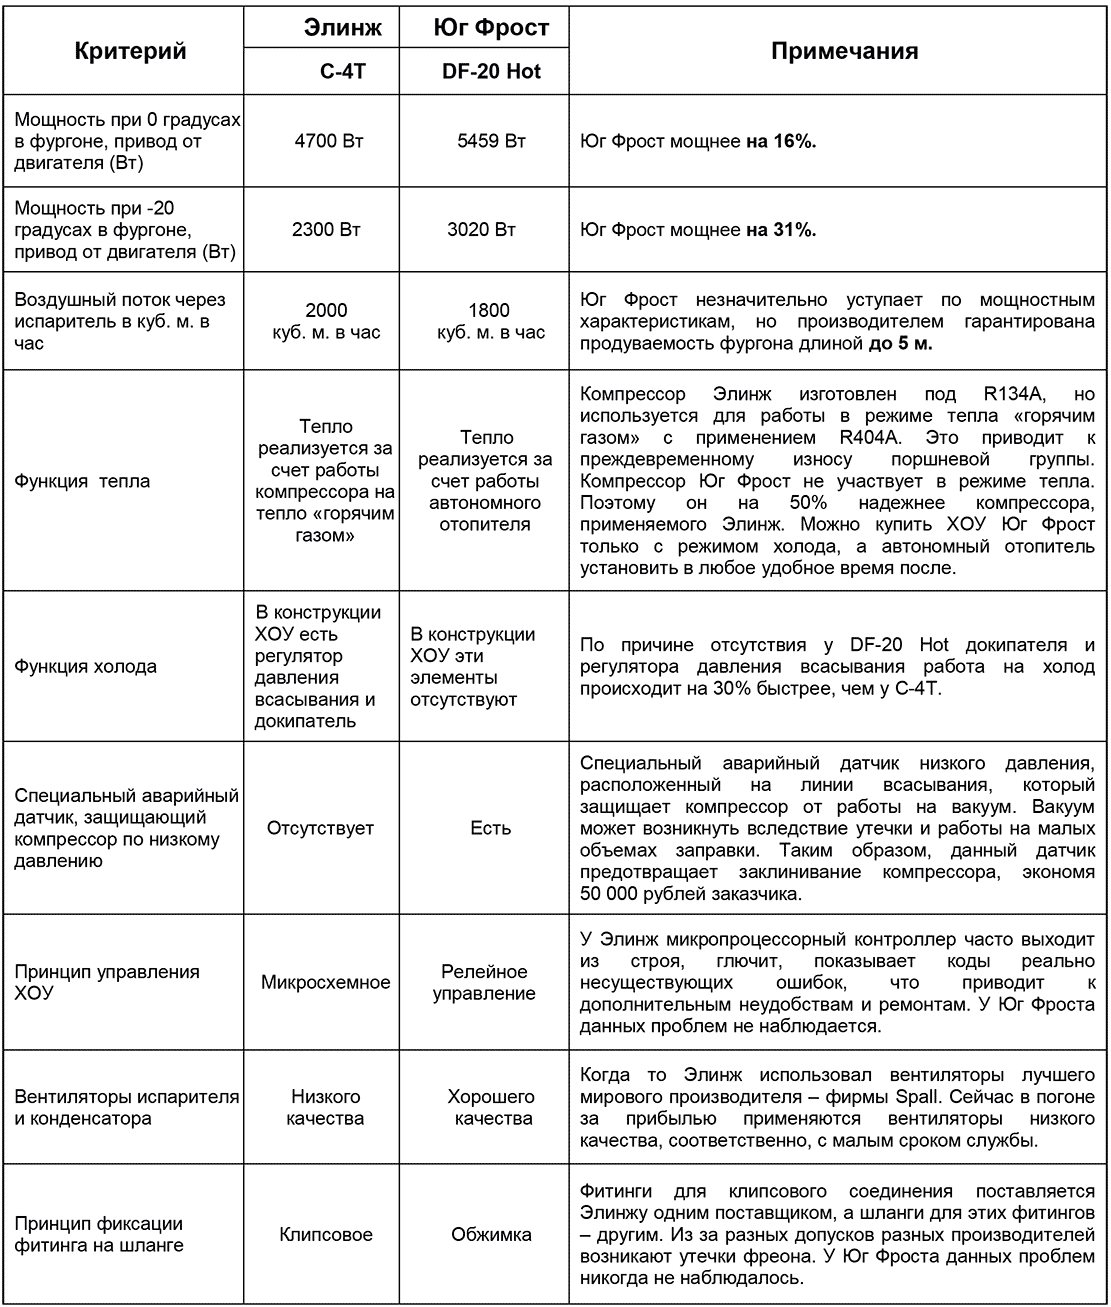 Сравнение рефрижераторов Юг Фрост DF-20 Hot и Элинж C-4T